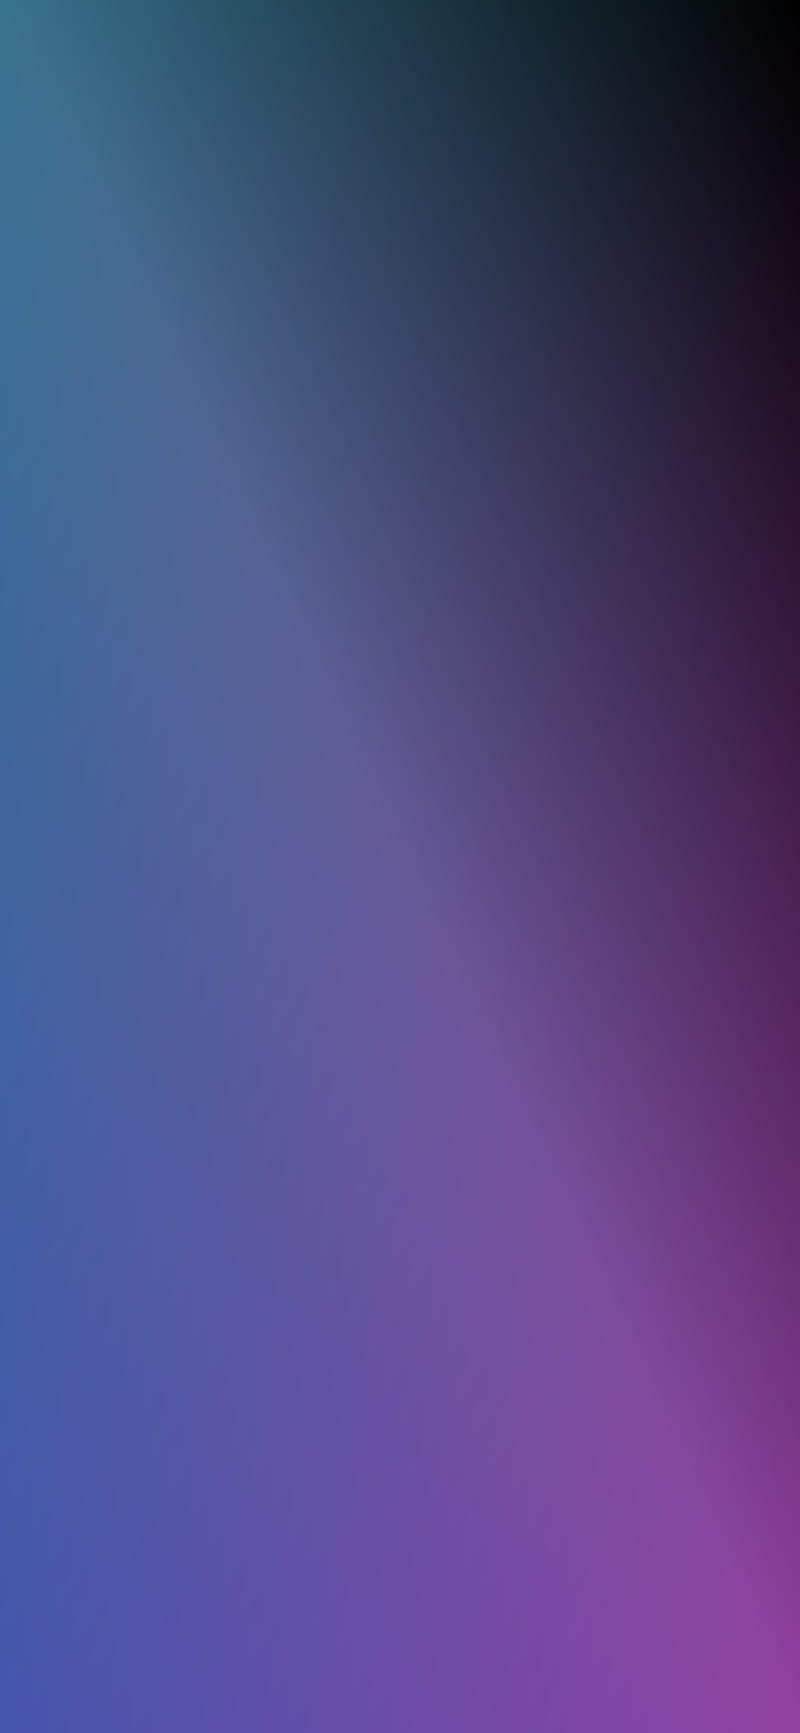 Free download Pink Purple Blue Violet Gradient Ombre Wallpaper Purple  1242x2208 for your Desktop Mobile  Tablet  Explore 18 Purple and Blue Ombre  Wallpapers  Purple And Blue Backgrounds Blue And